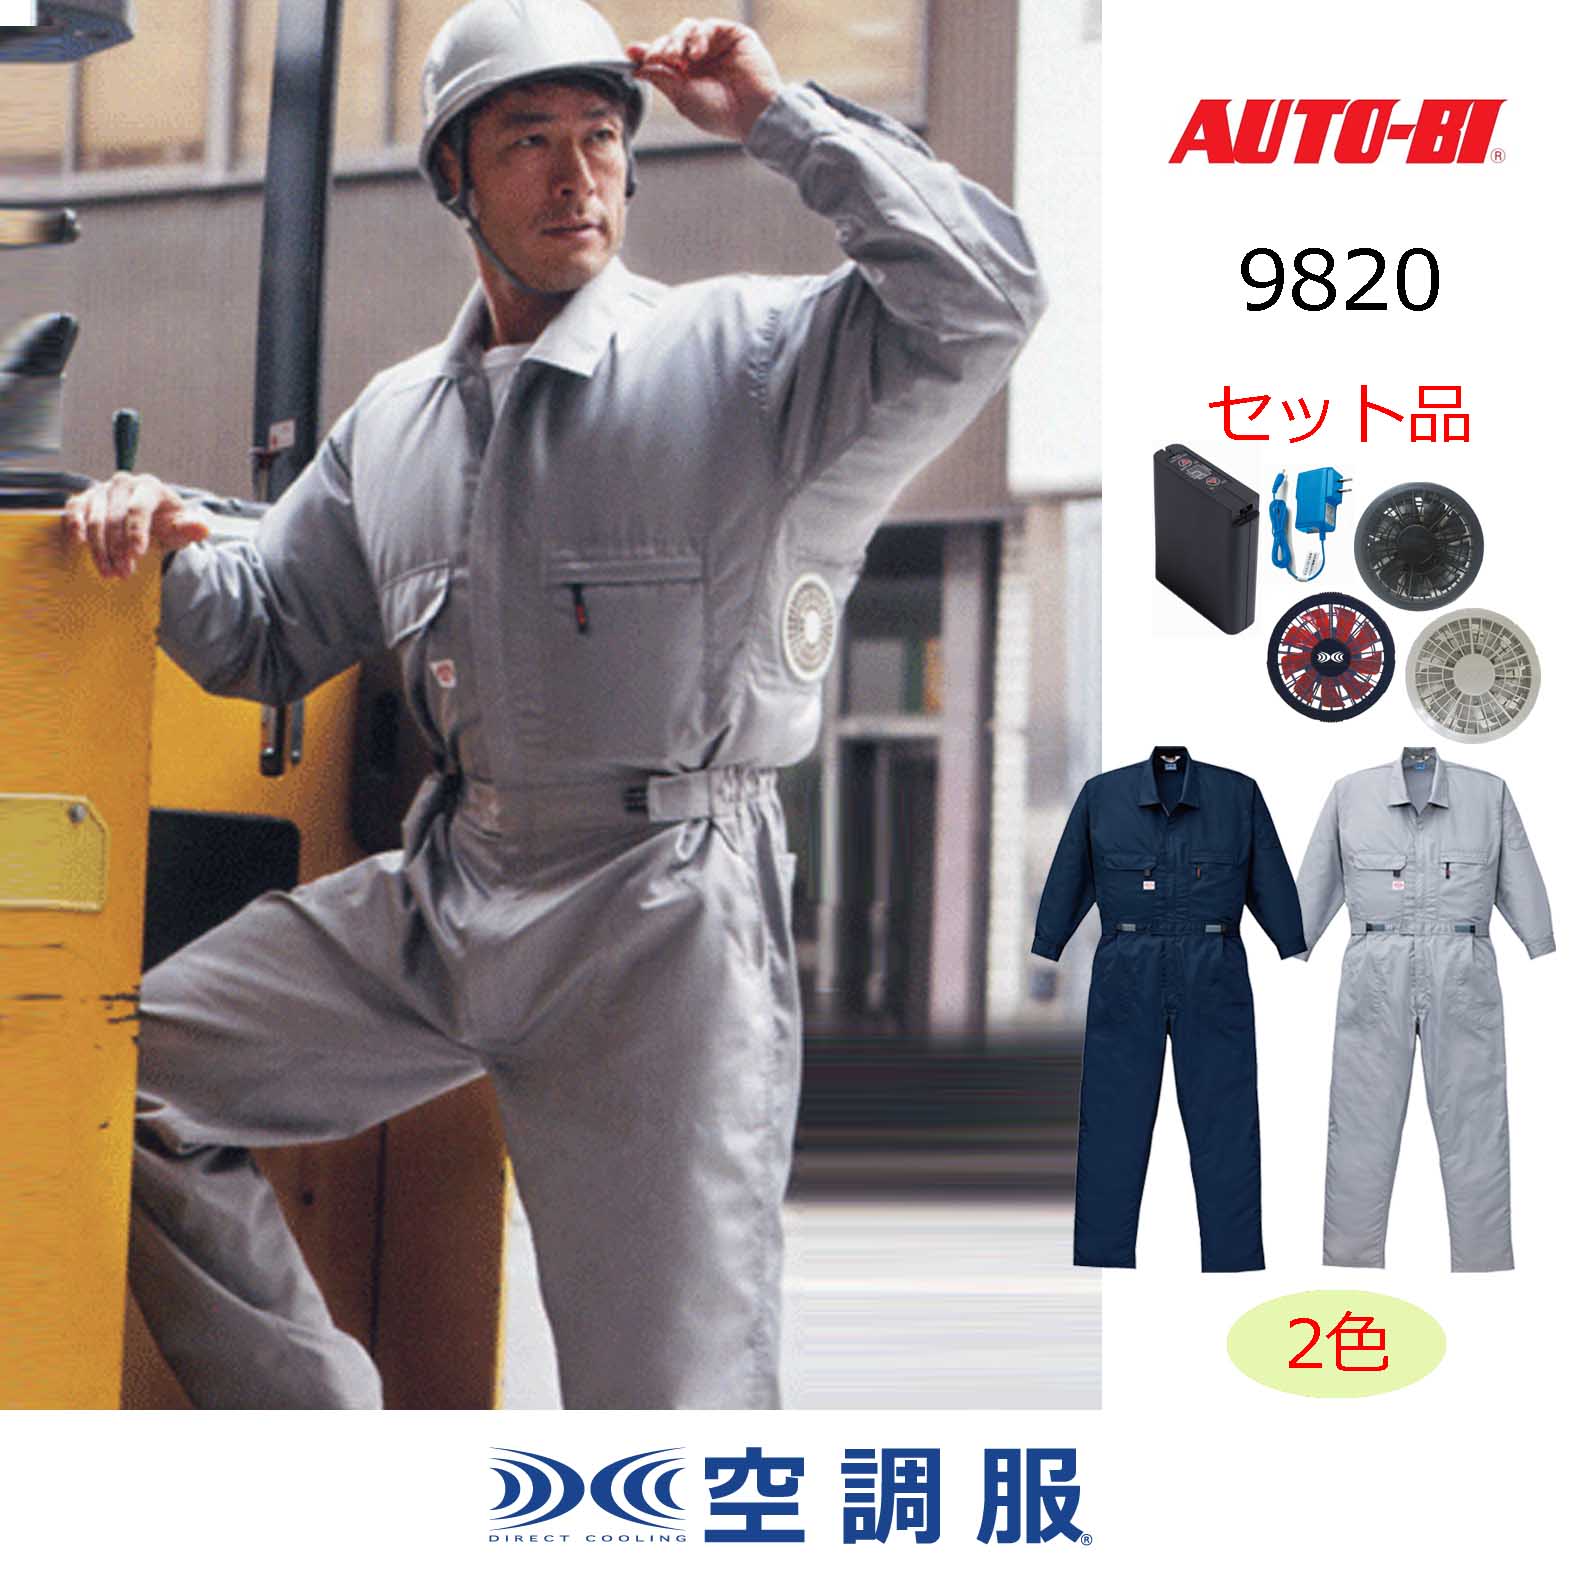 9820【空調服(R)セット】AUTO-BIツナギ・ファン・バッテリー(充電器付